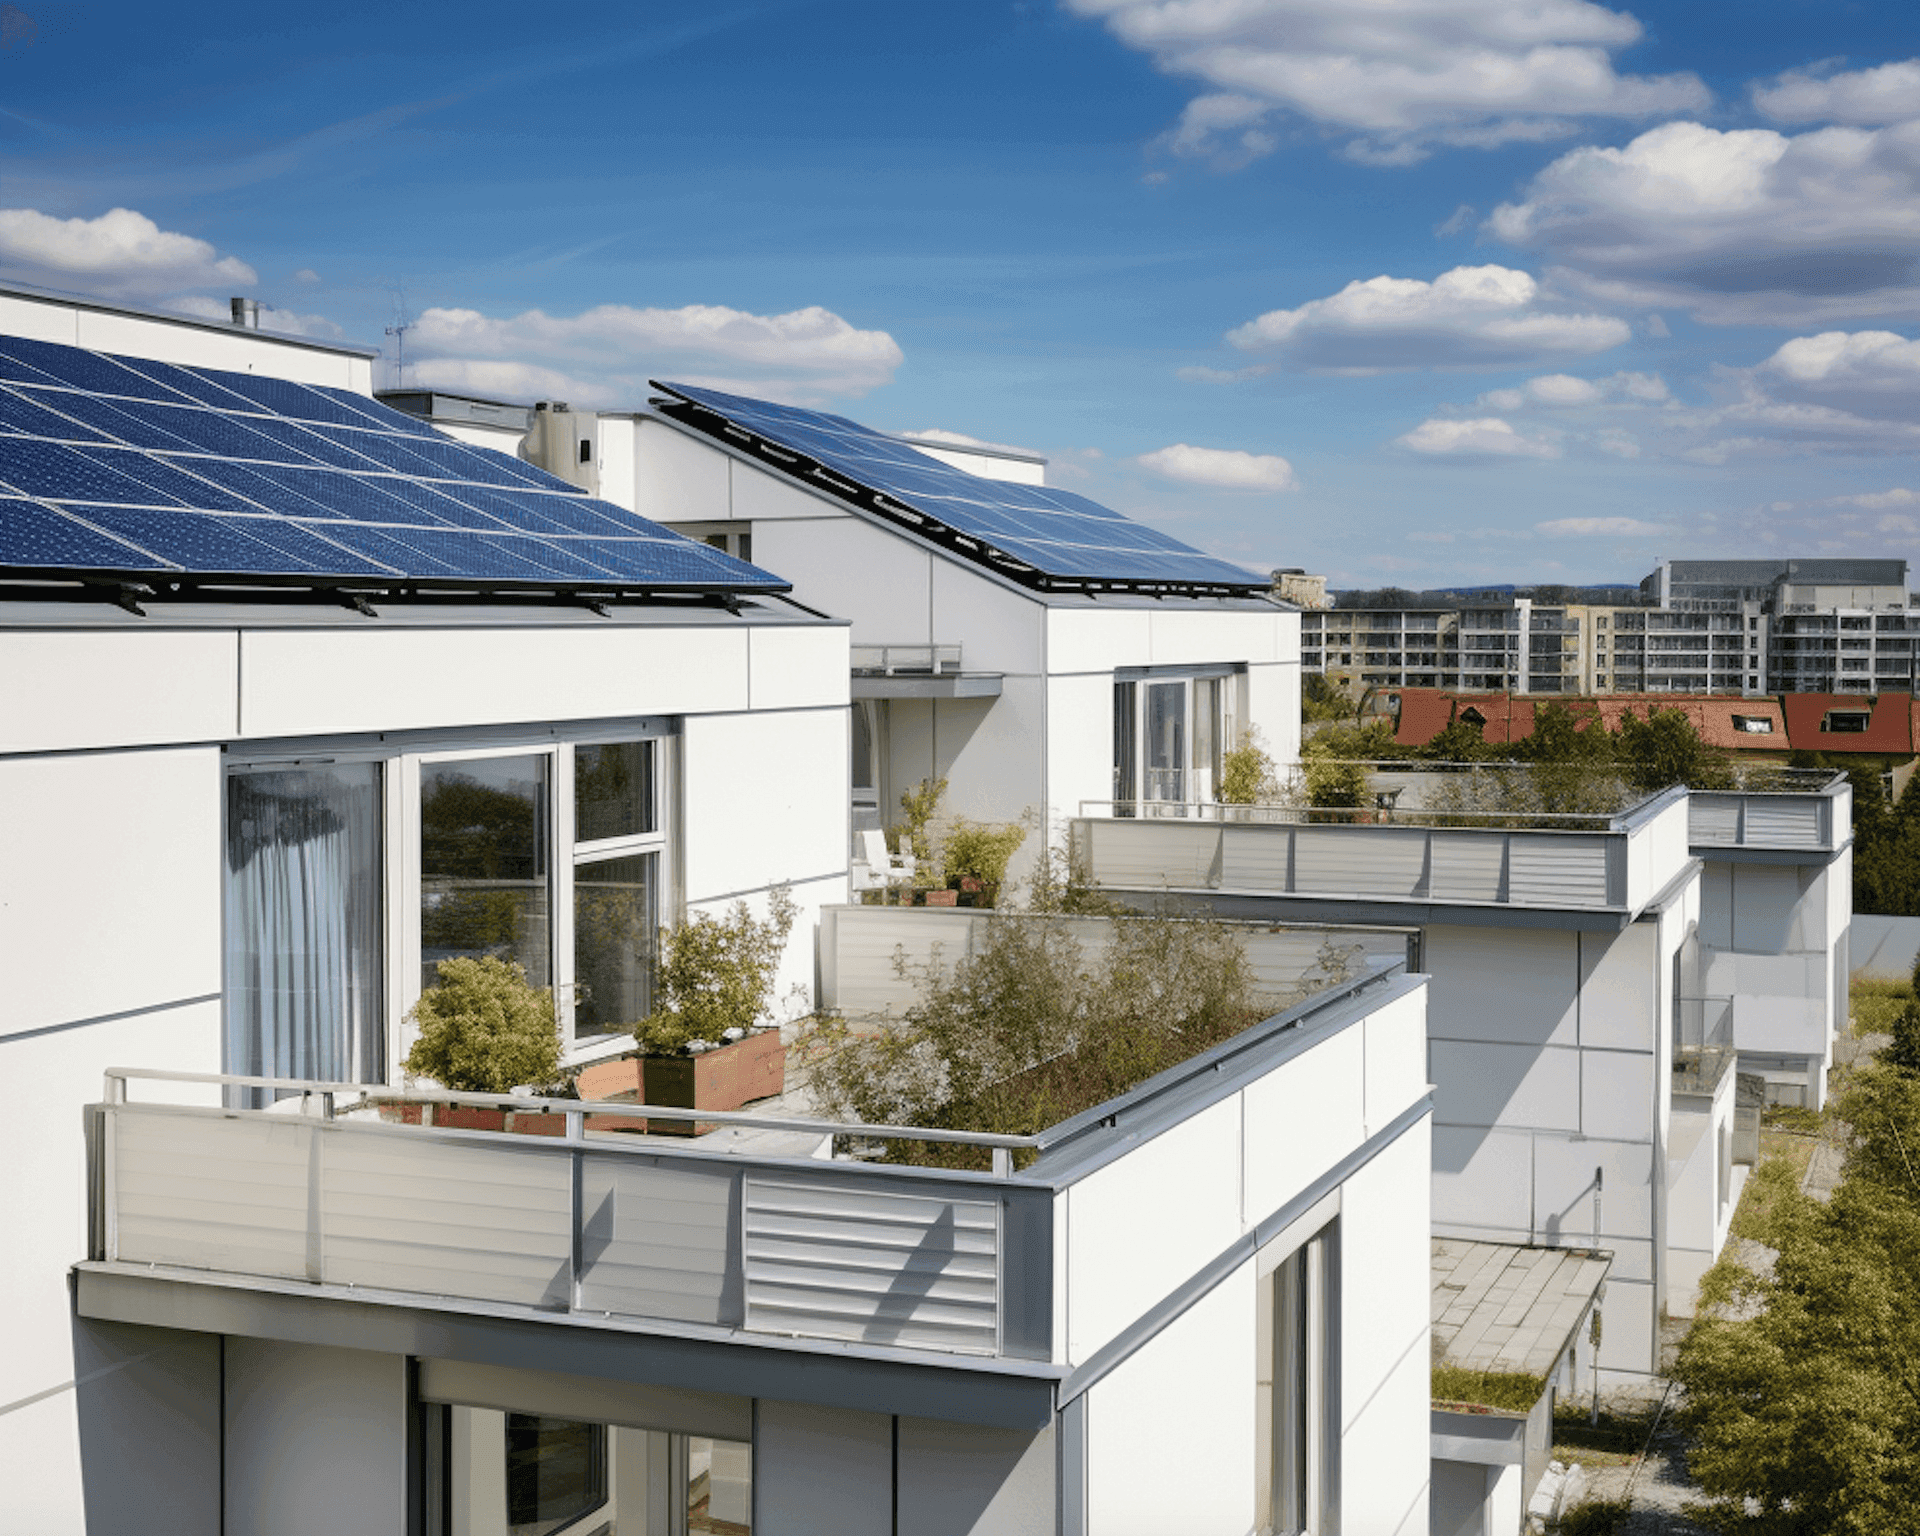 Effiziente und maßgeschneiderte Solarlösungen für Ihr Zuhause.